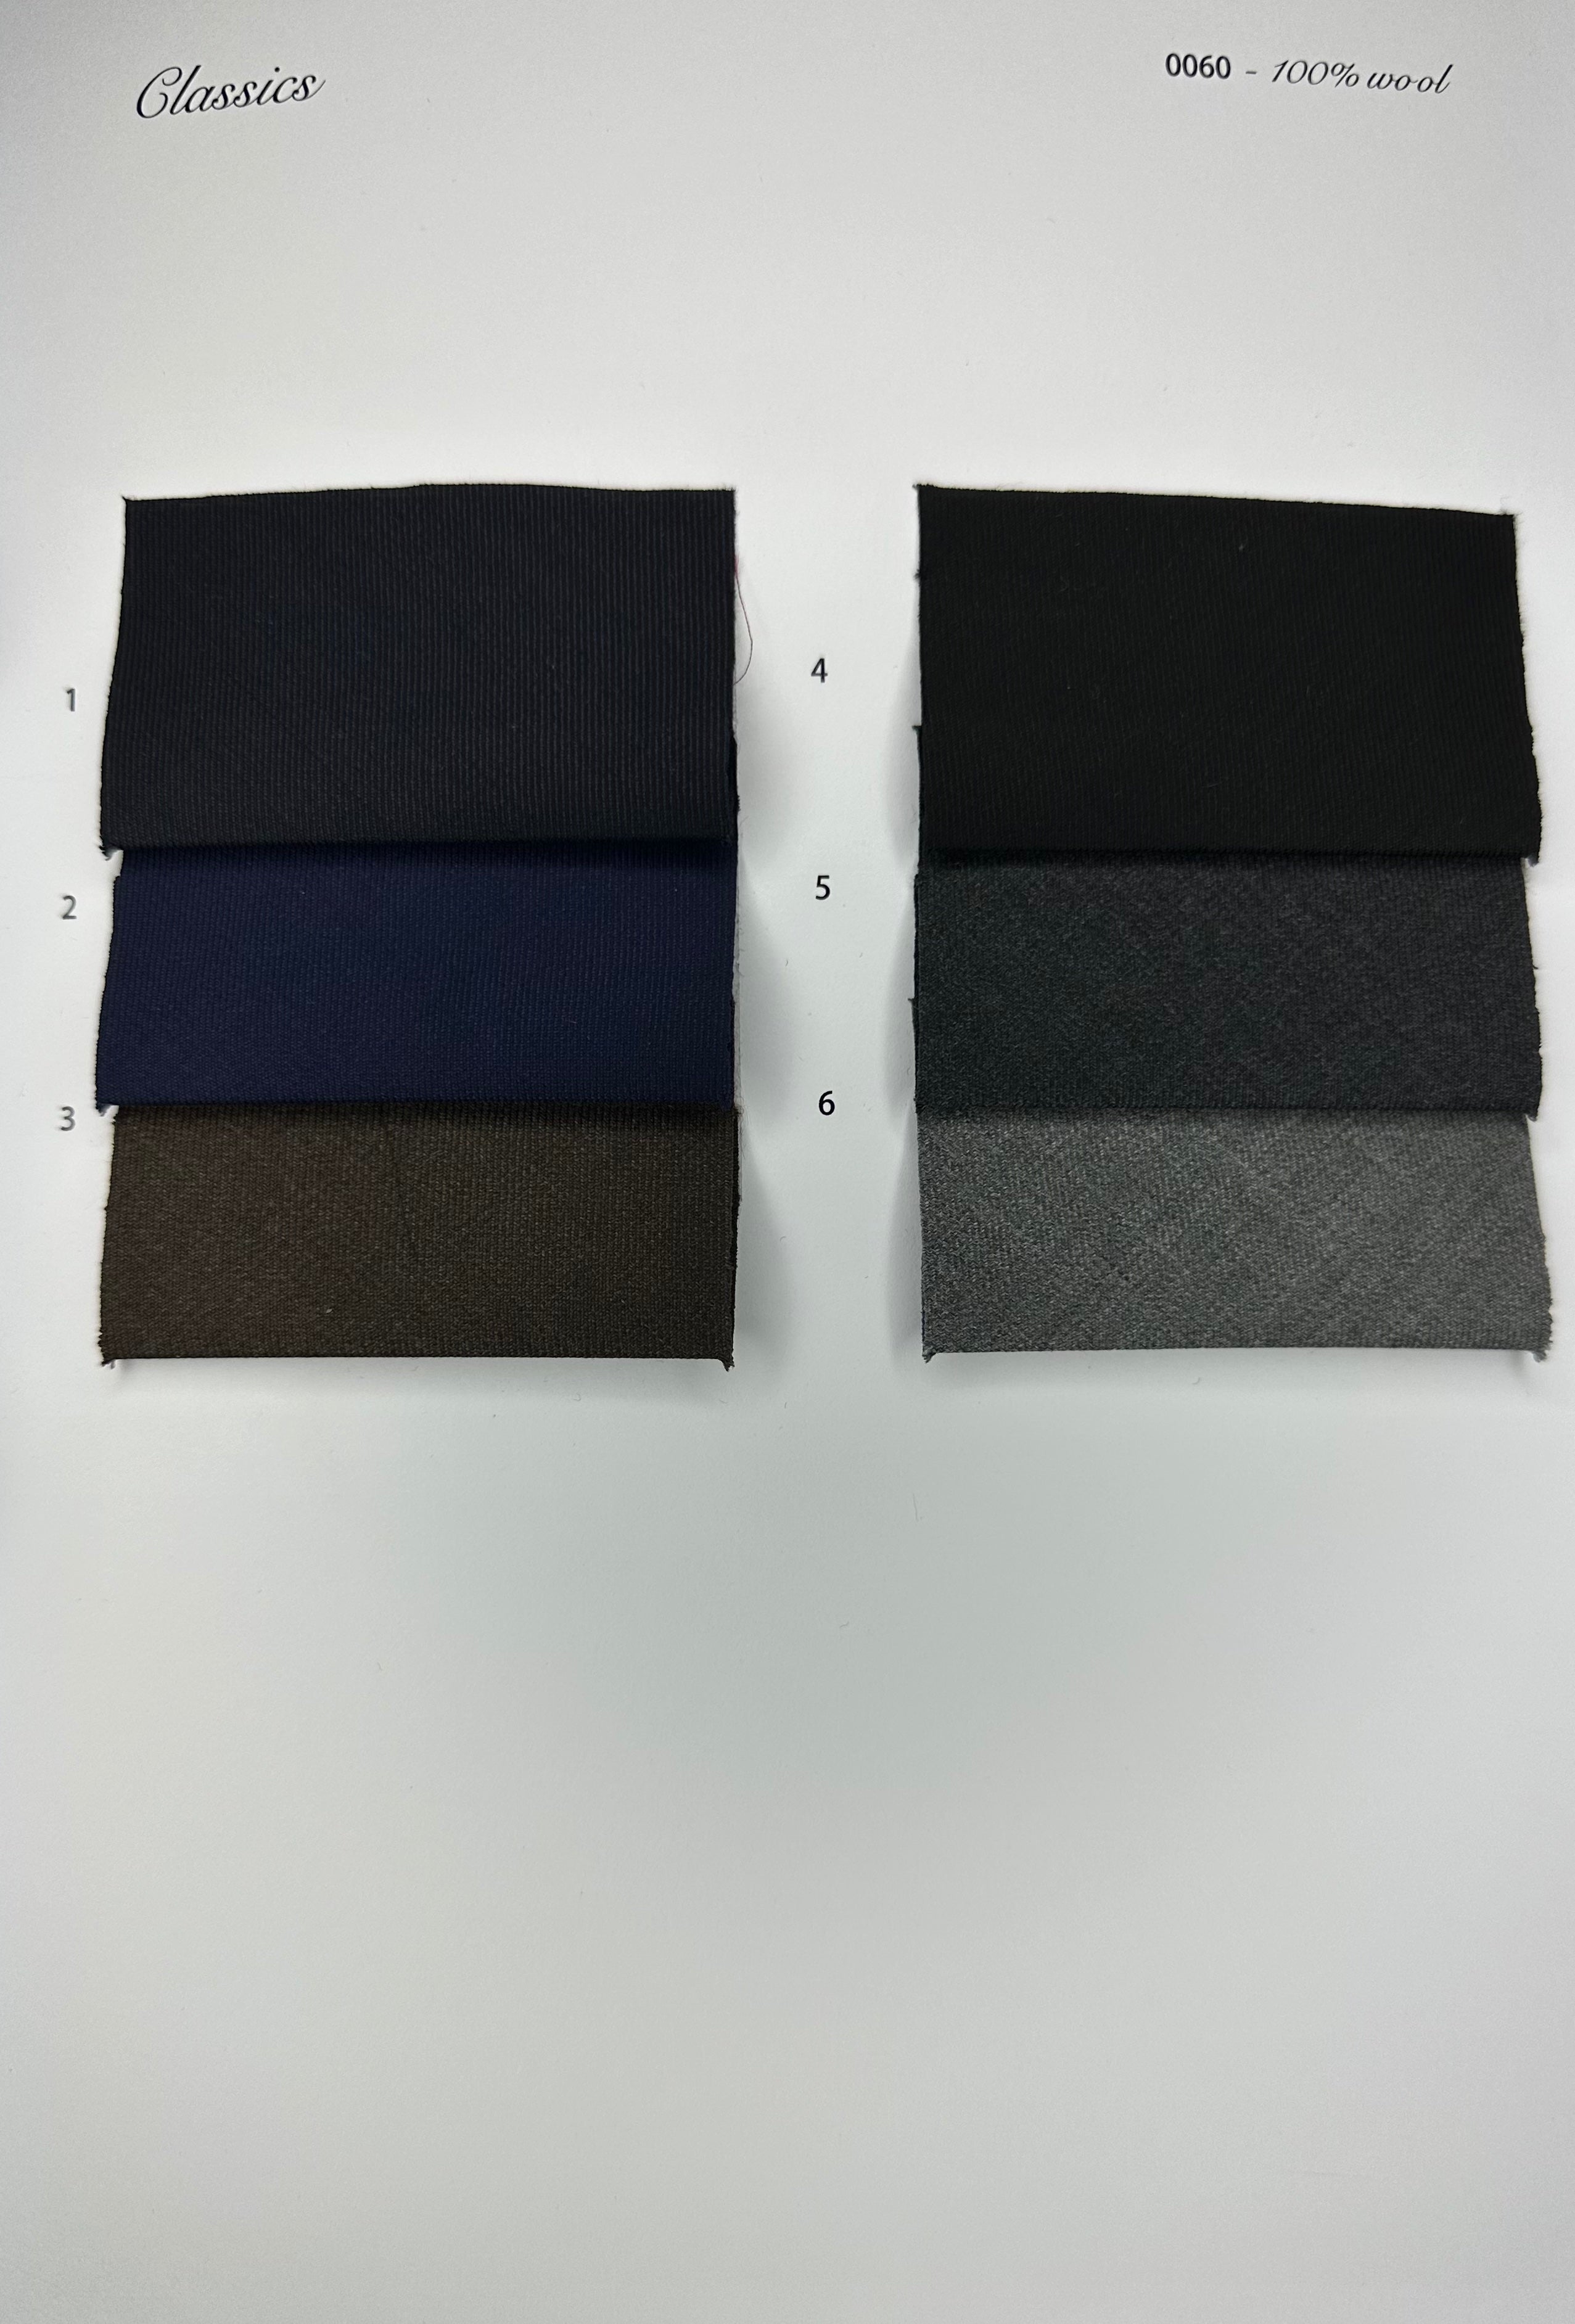 Classics 0060 100% Wool Tie with Monogram Option